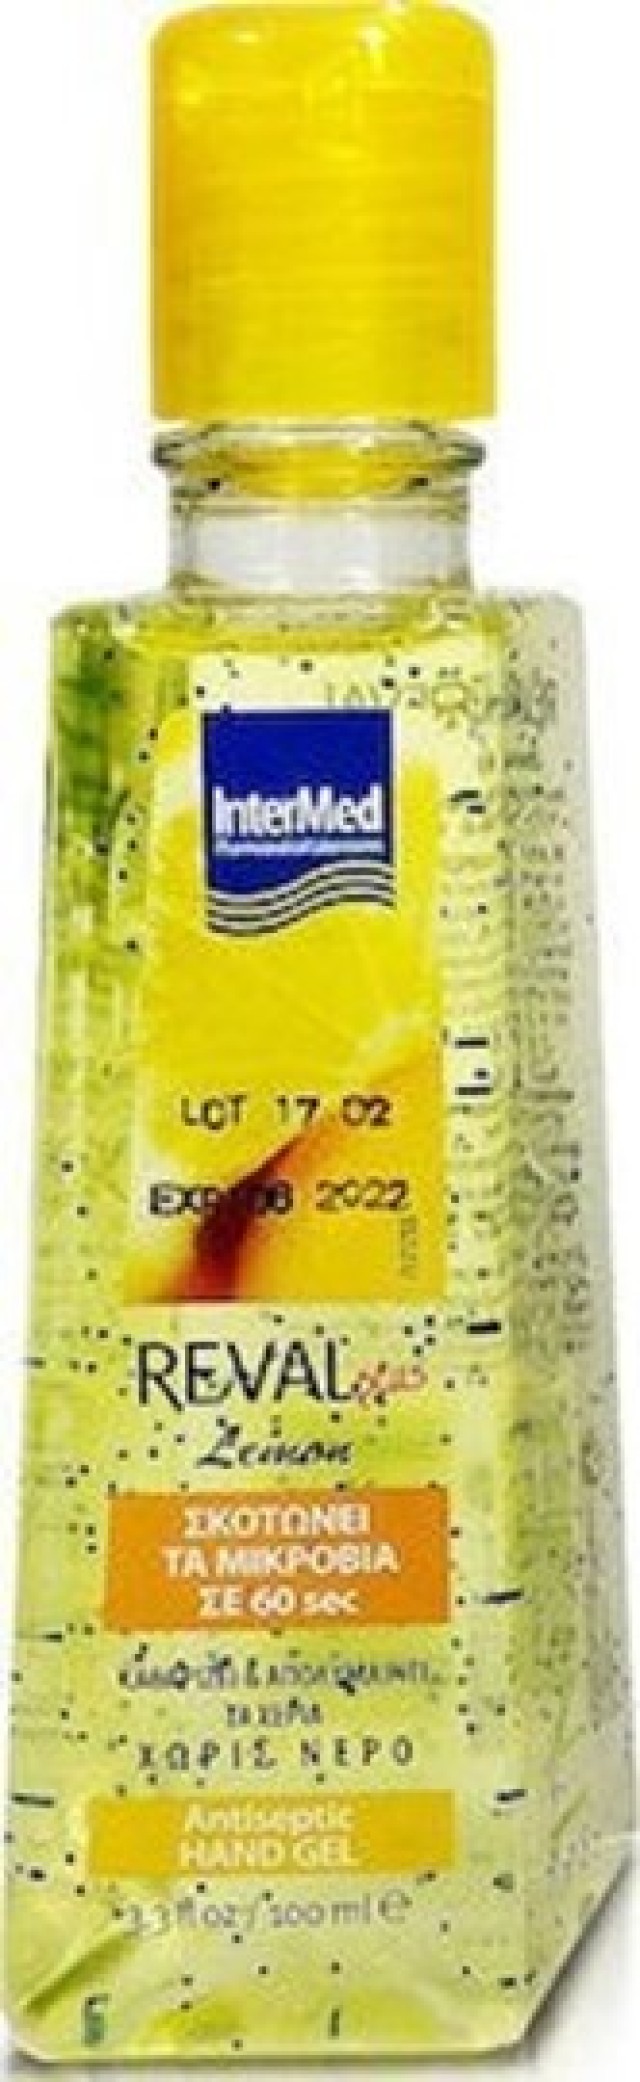 Intermed Reval Hand Gel Lemon, 100ml